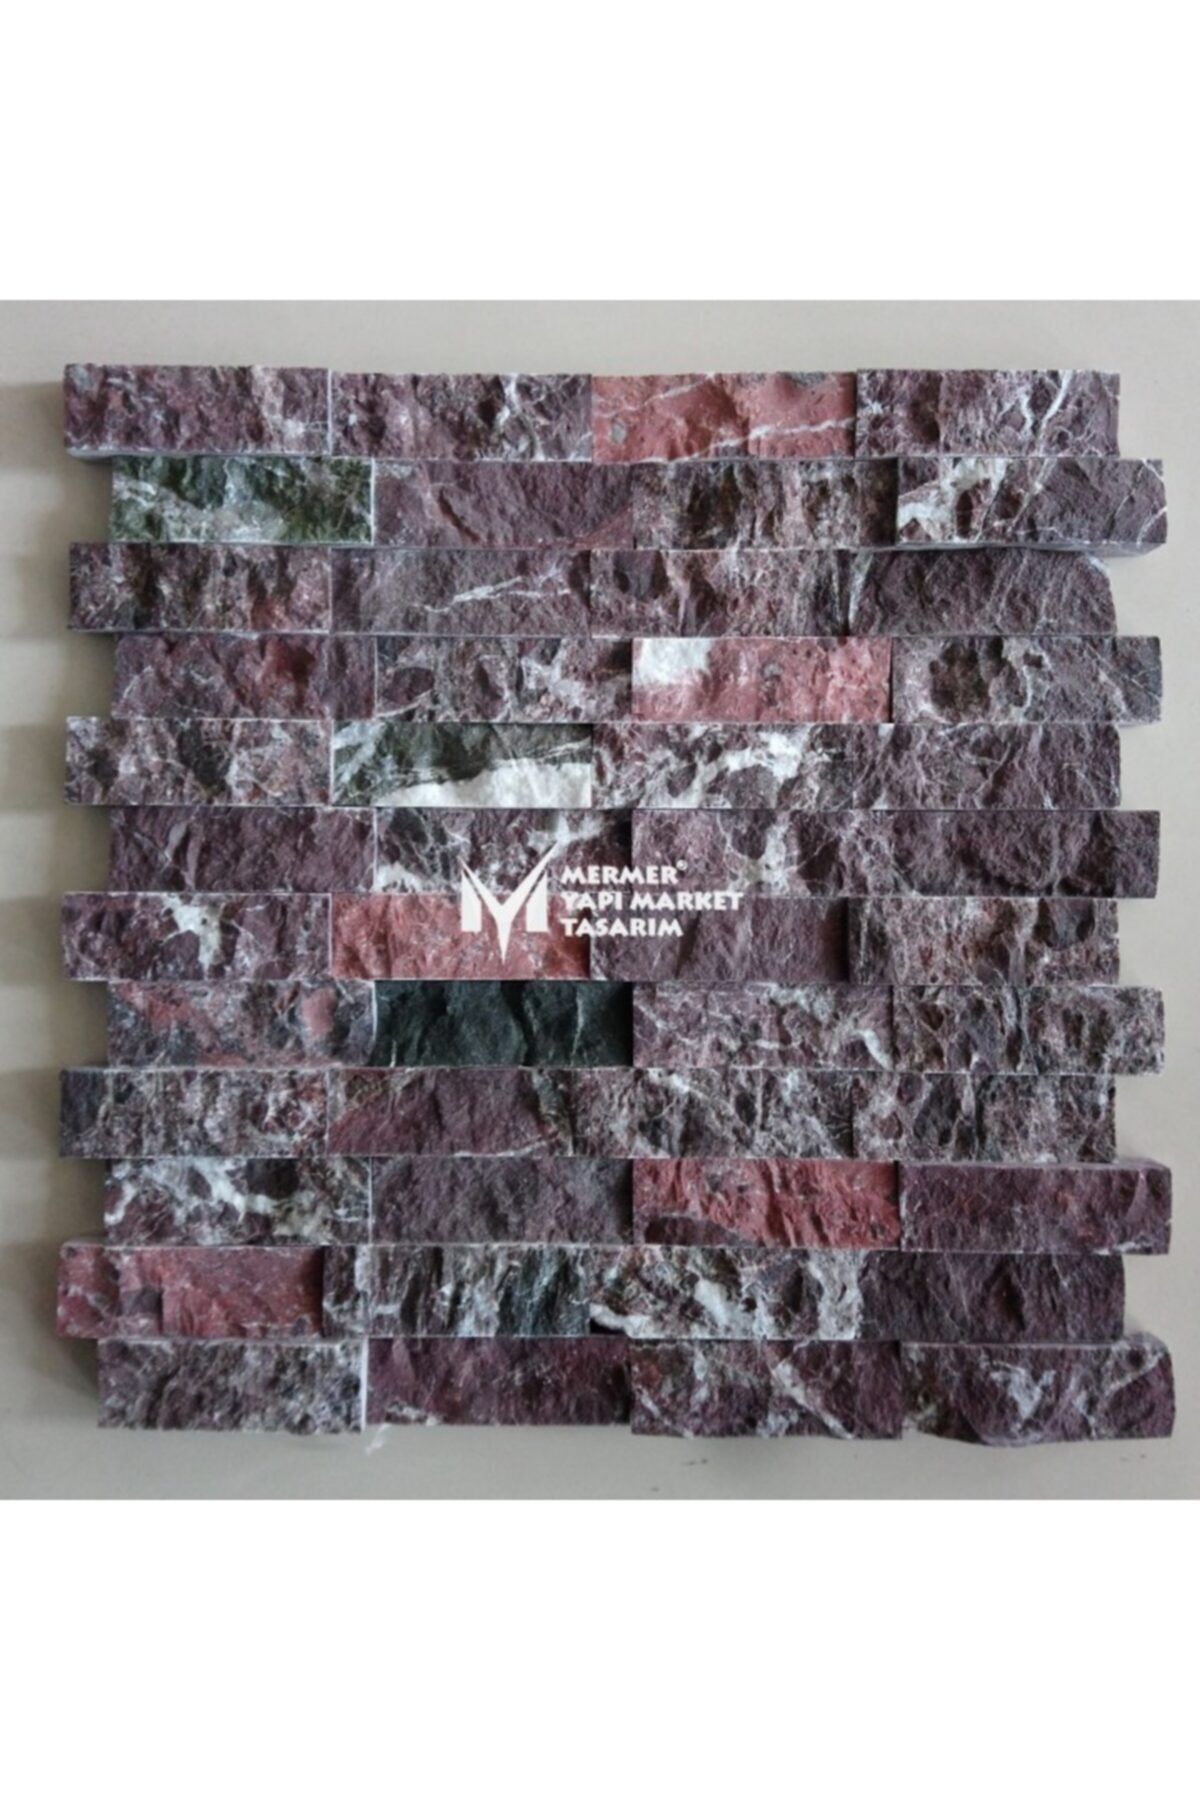 MYM Mermer Yapı Market Tasarım Elazığ Vişne Patlatma Mozaik - 2,5x7,5 Cm